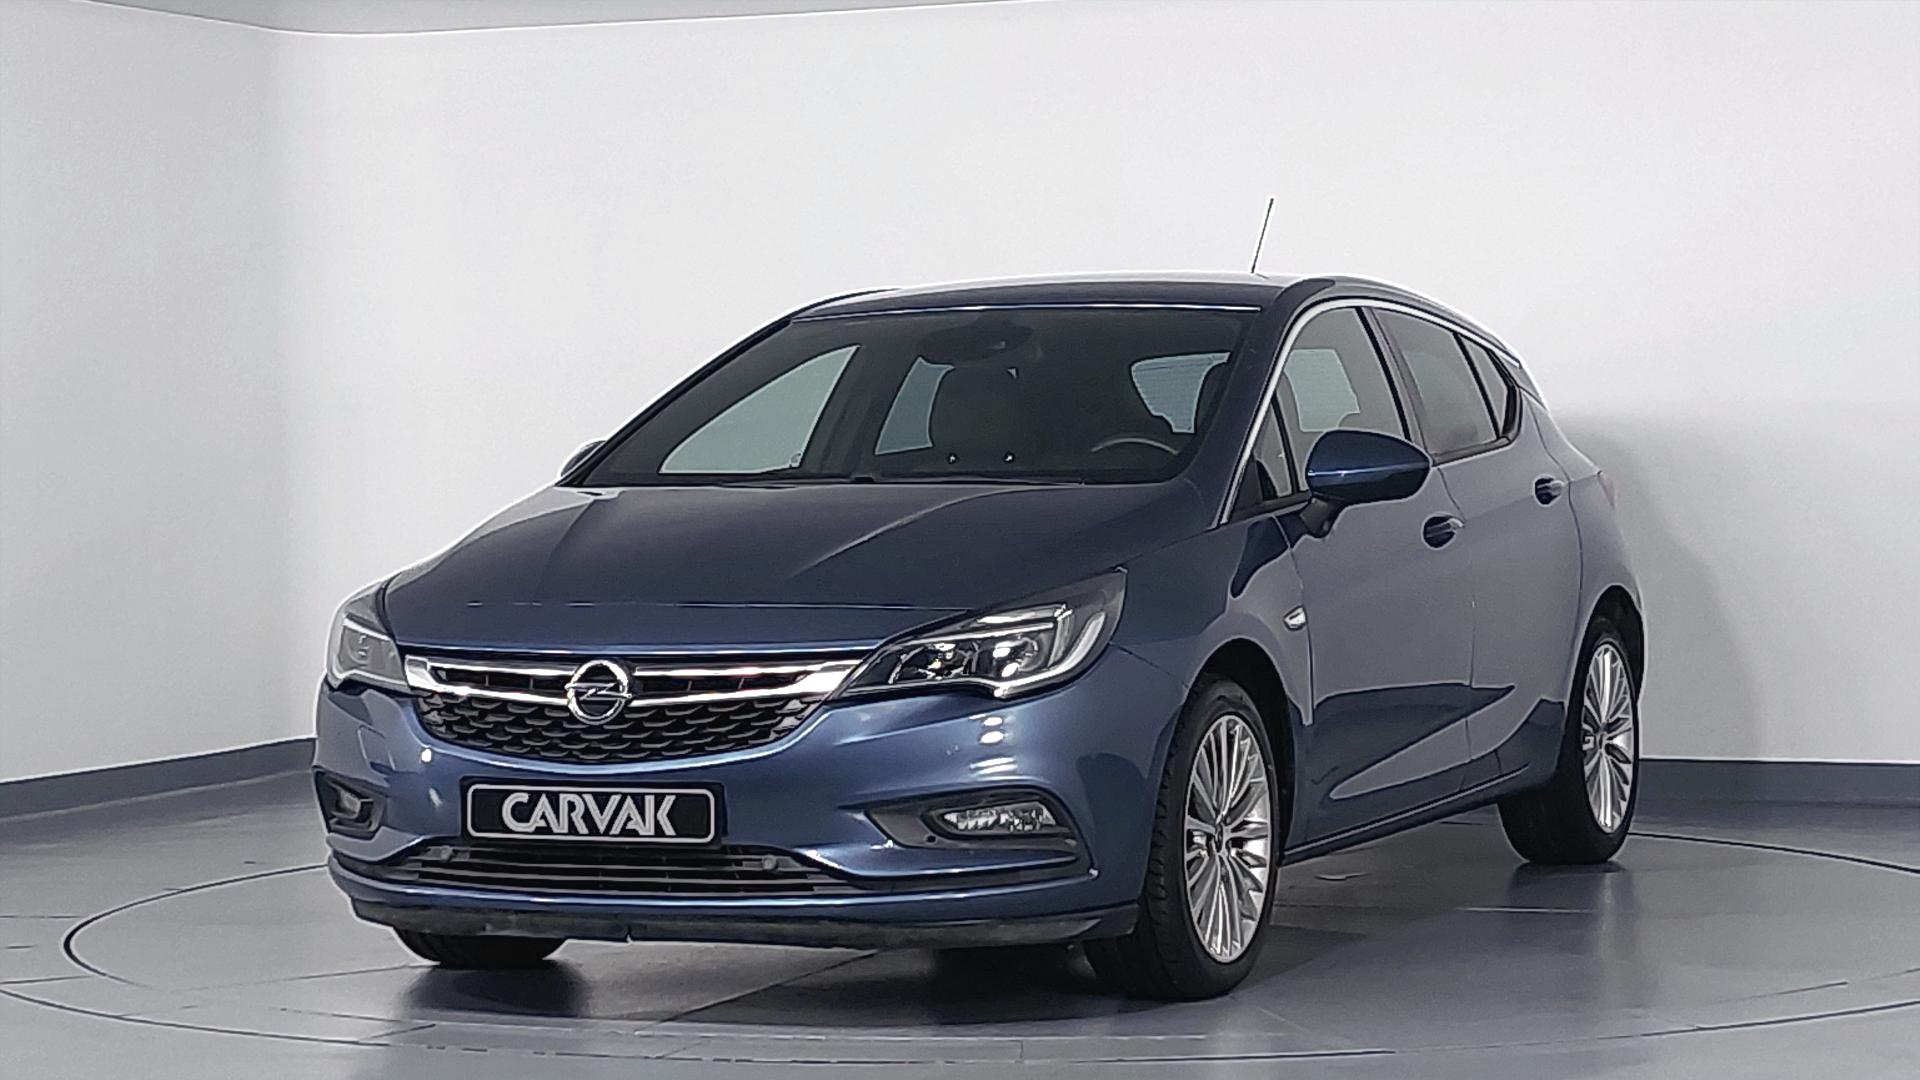 Satılık Opel Astra 1.4 AT6 DYNAMIC Hatchback 2016 Arabalar | CARVAK Türkiye